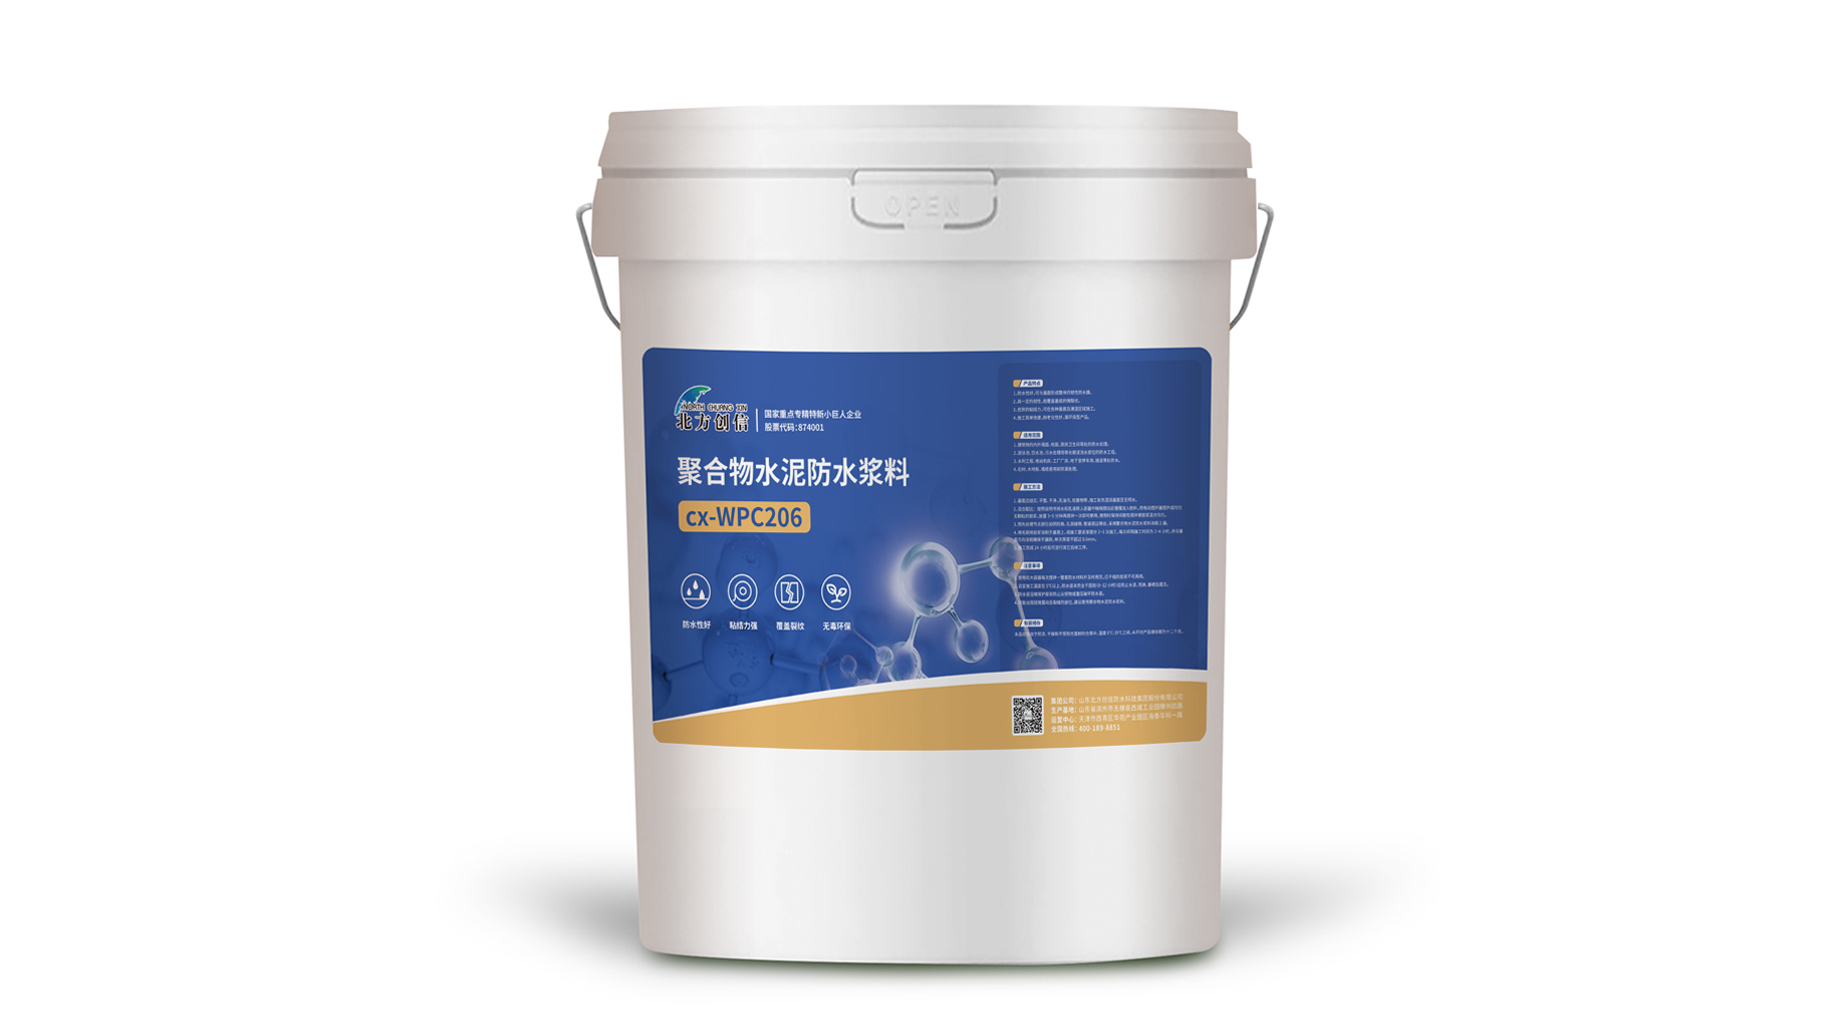 cx-WPC206 聚合物水泥防水浆料